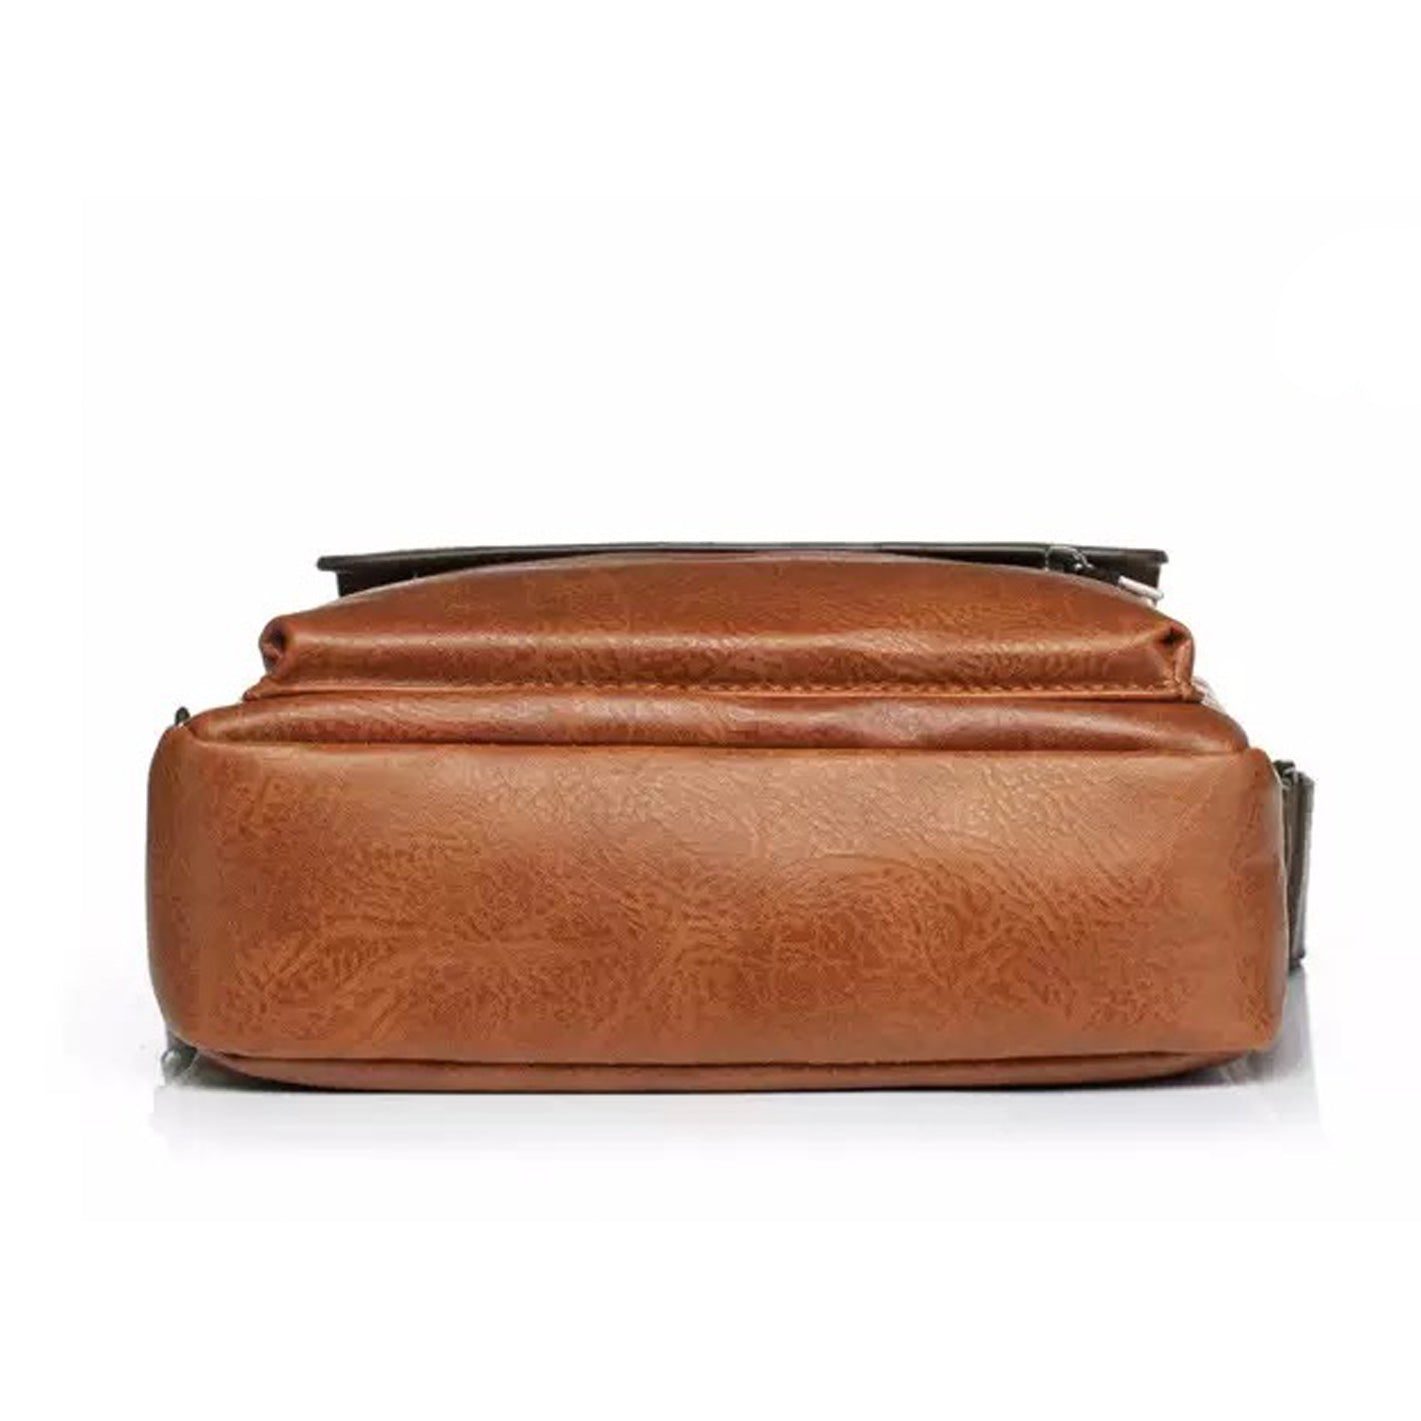 Men's Messenger Bag Shoulder Bag | Large Capacity Hand Bag - PUSHCHAIR